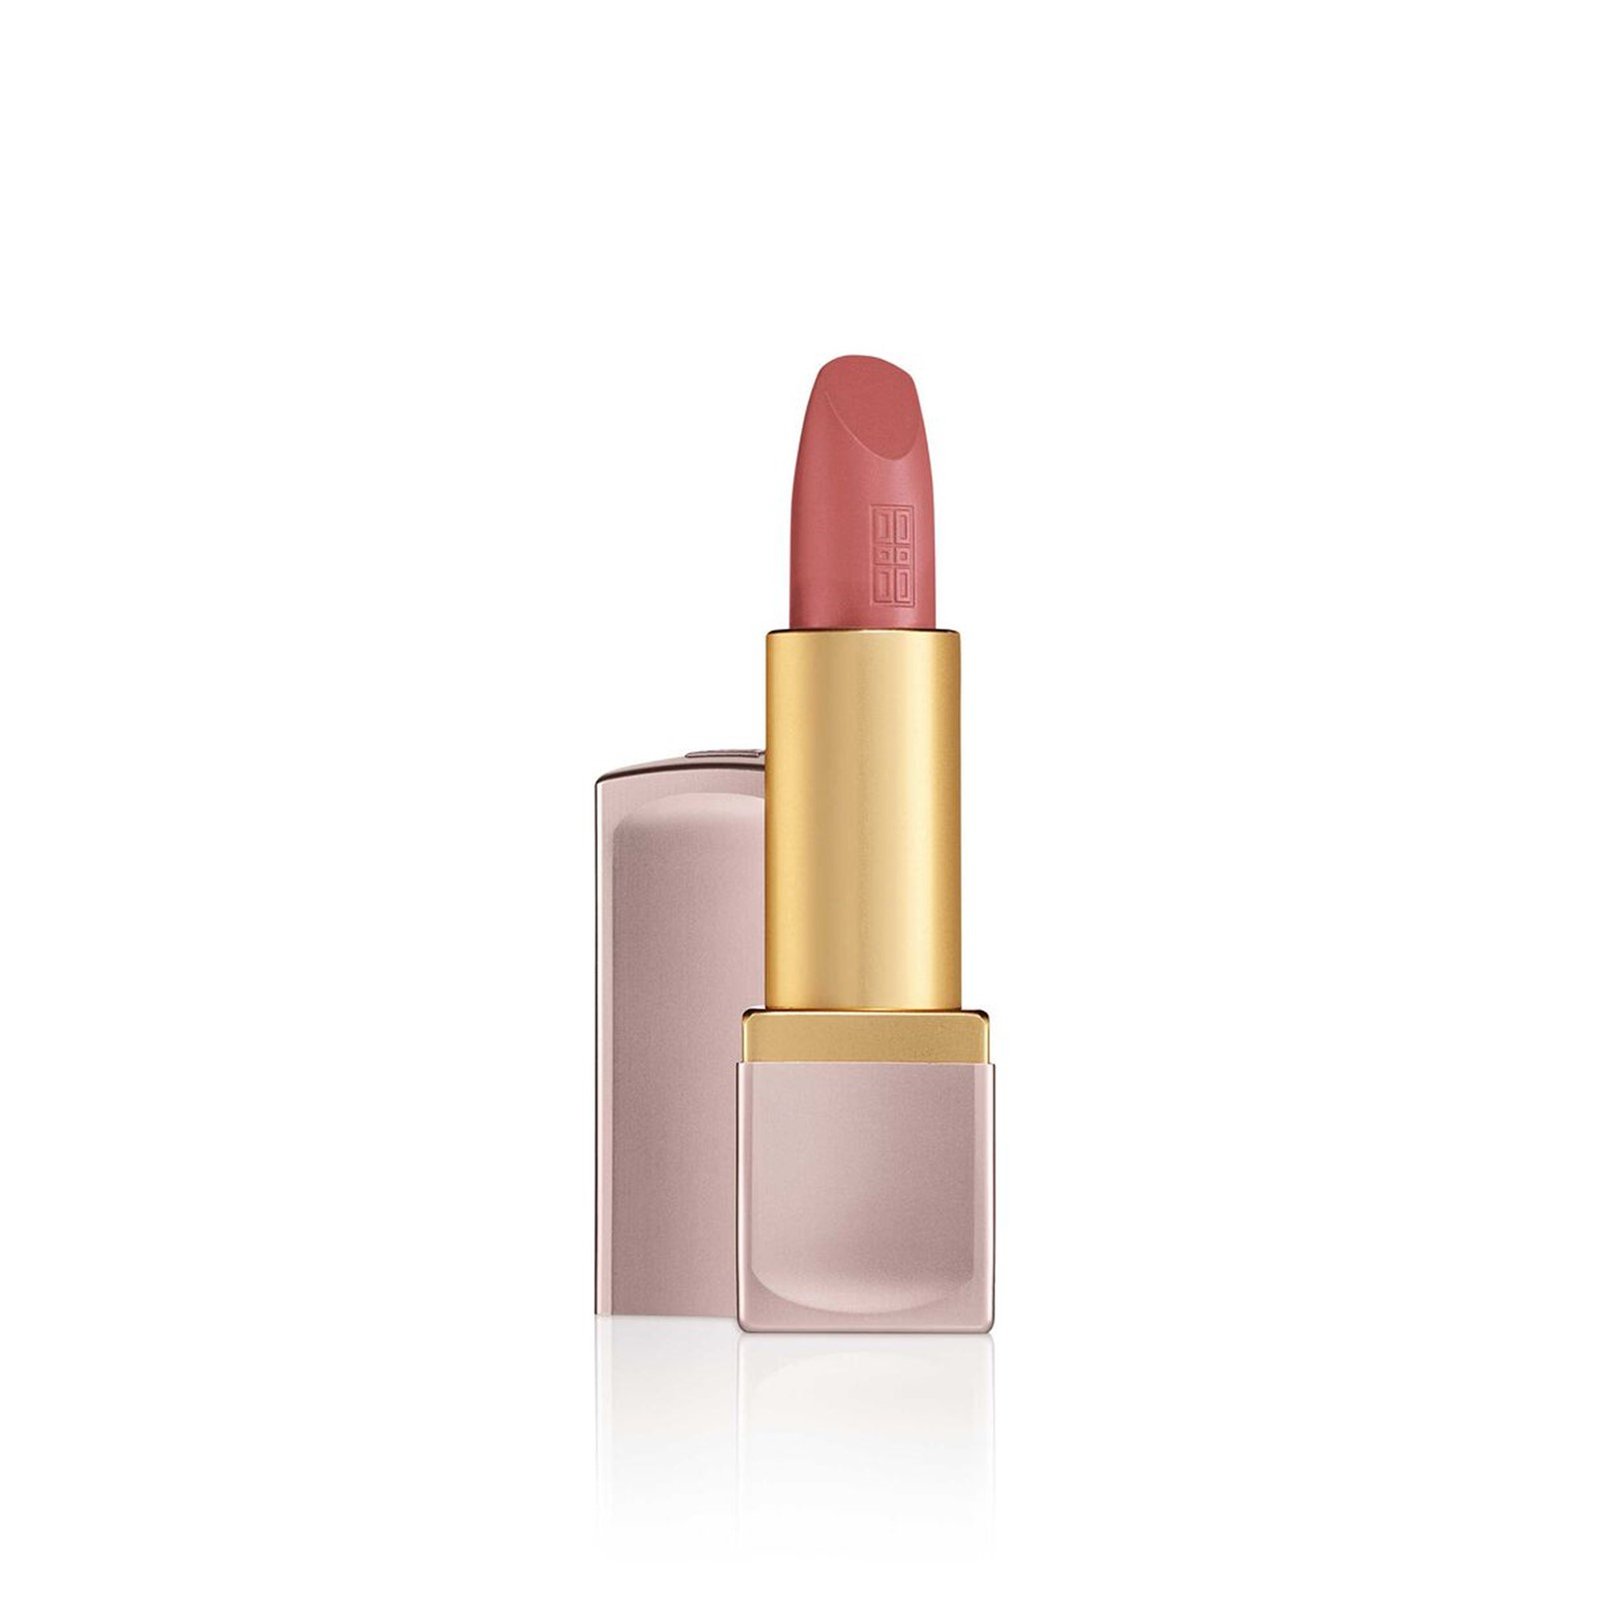 Elizabeth Arden Lip Color Lipstick 04 Romantic Rose Matte 4g (0.14 oz)